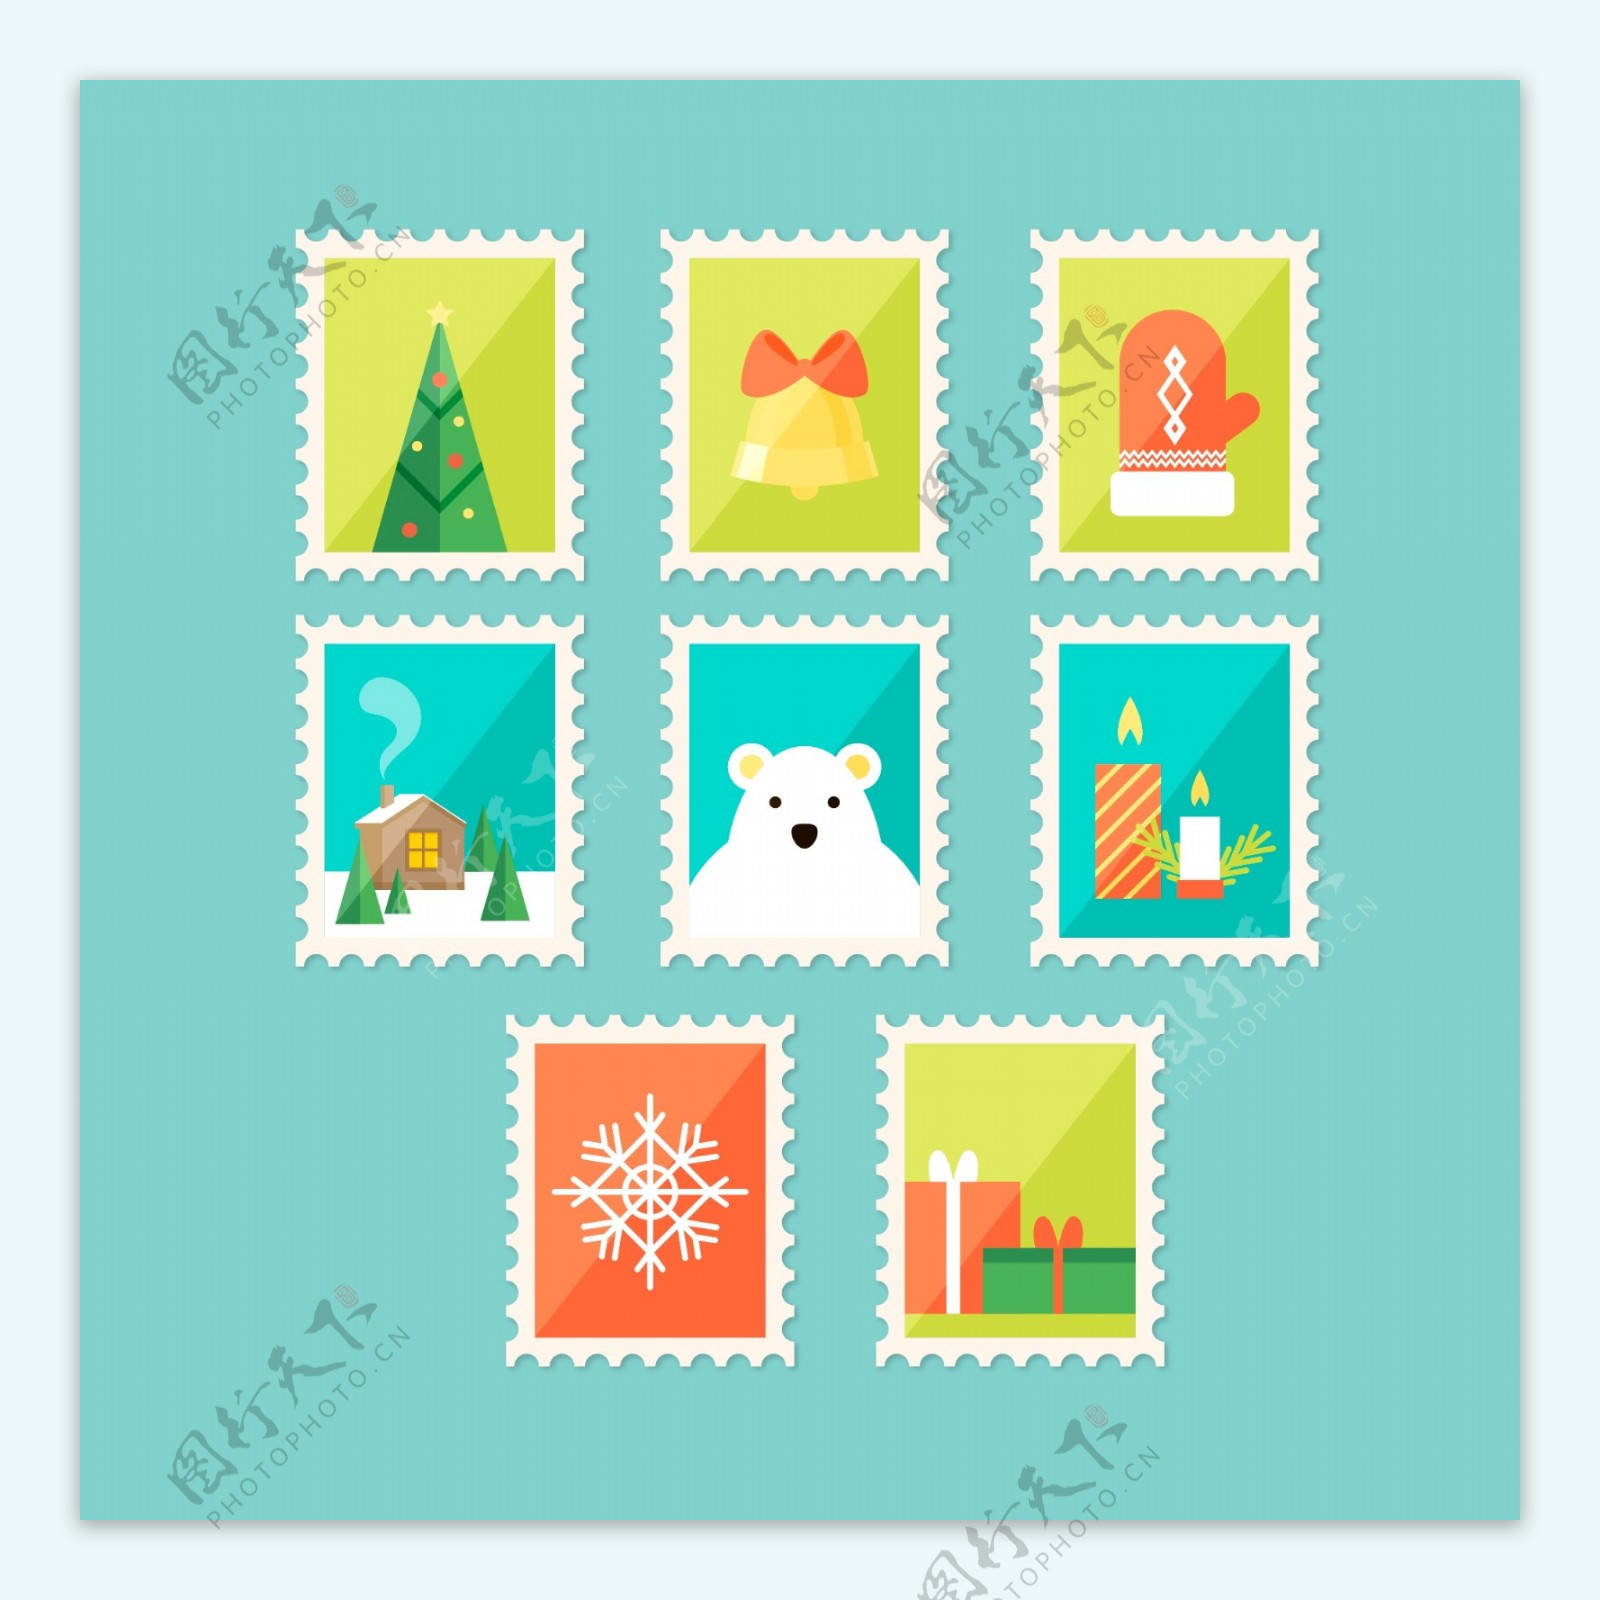 清新彩色的圣诞节邮票标签